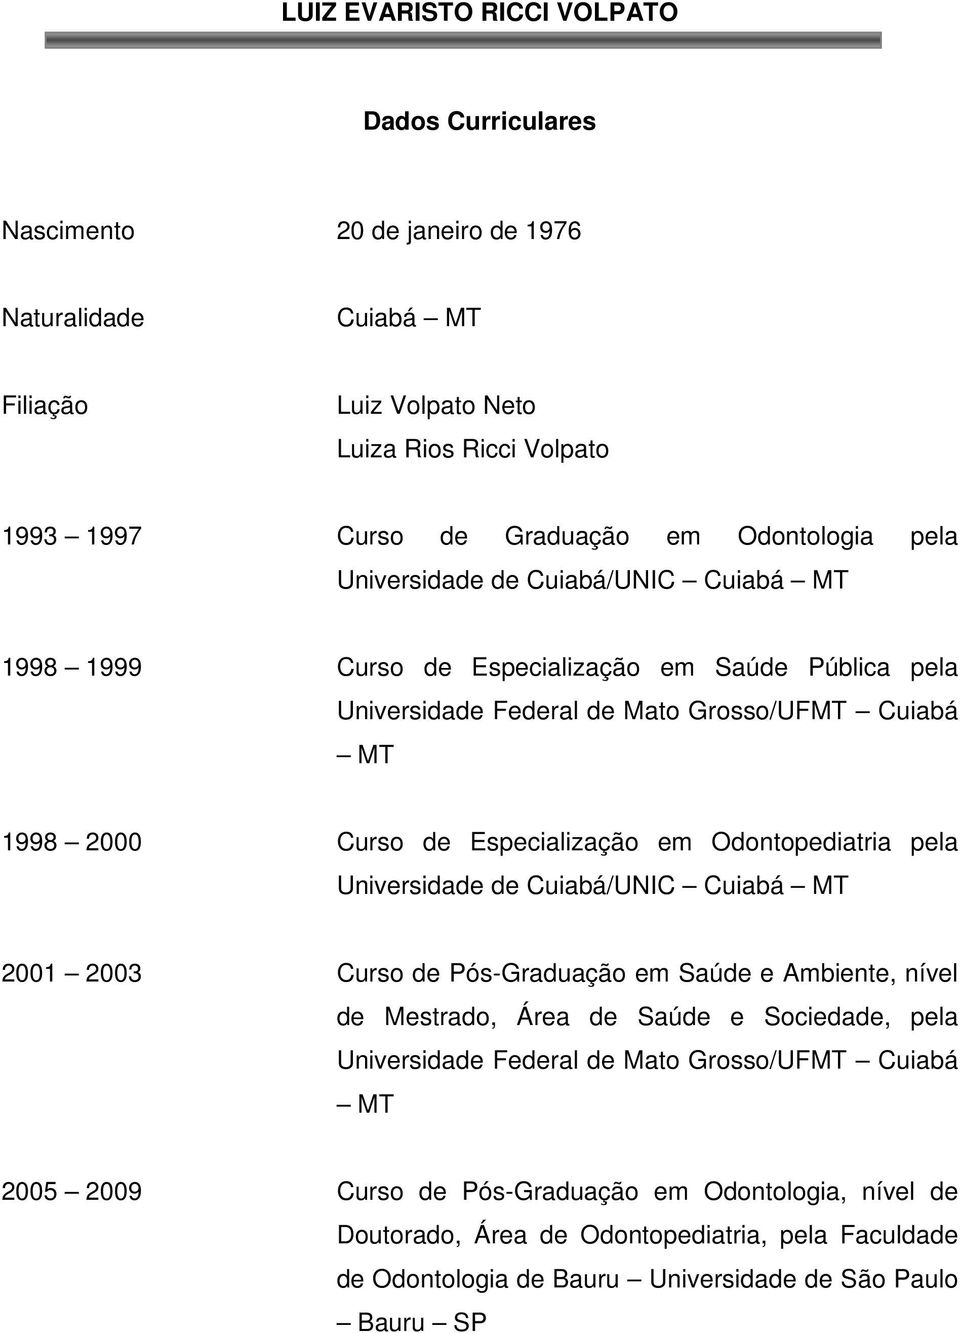 Especialização em Odontopediatria pela Universidade de Cuiabá/UNIC Cuiabá MT 2001 2003 Curso de Pós-Graduação em Saúde e Ambiente, nível de Mestrado, Área de Saúde e Sociedade, pela